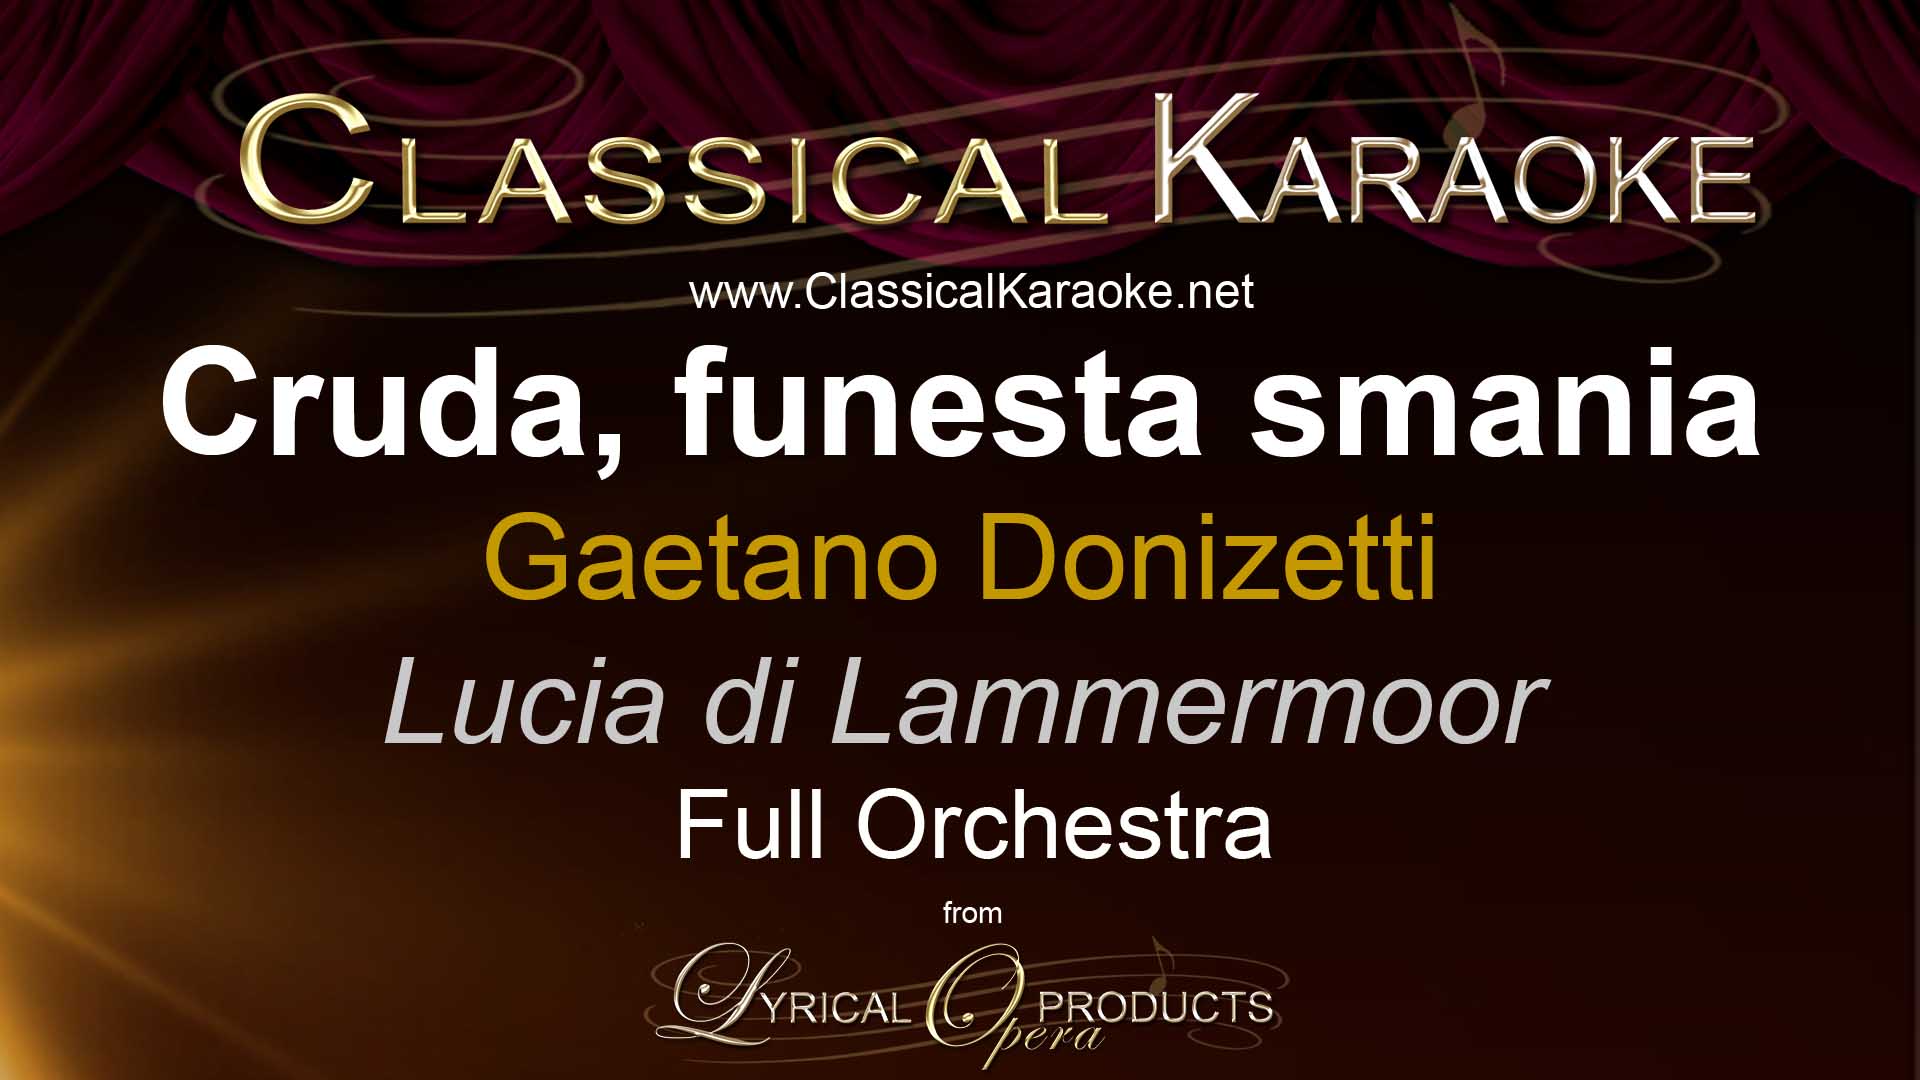 Cruda, funesta smania, by Donizetti, from Lucia di Lammermoor, Full Orchestral Accompaniment (karaoke) track